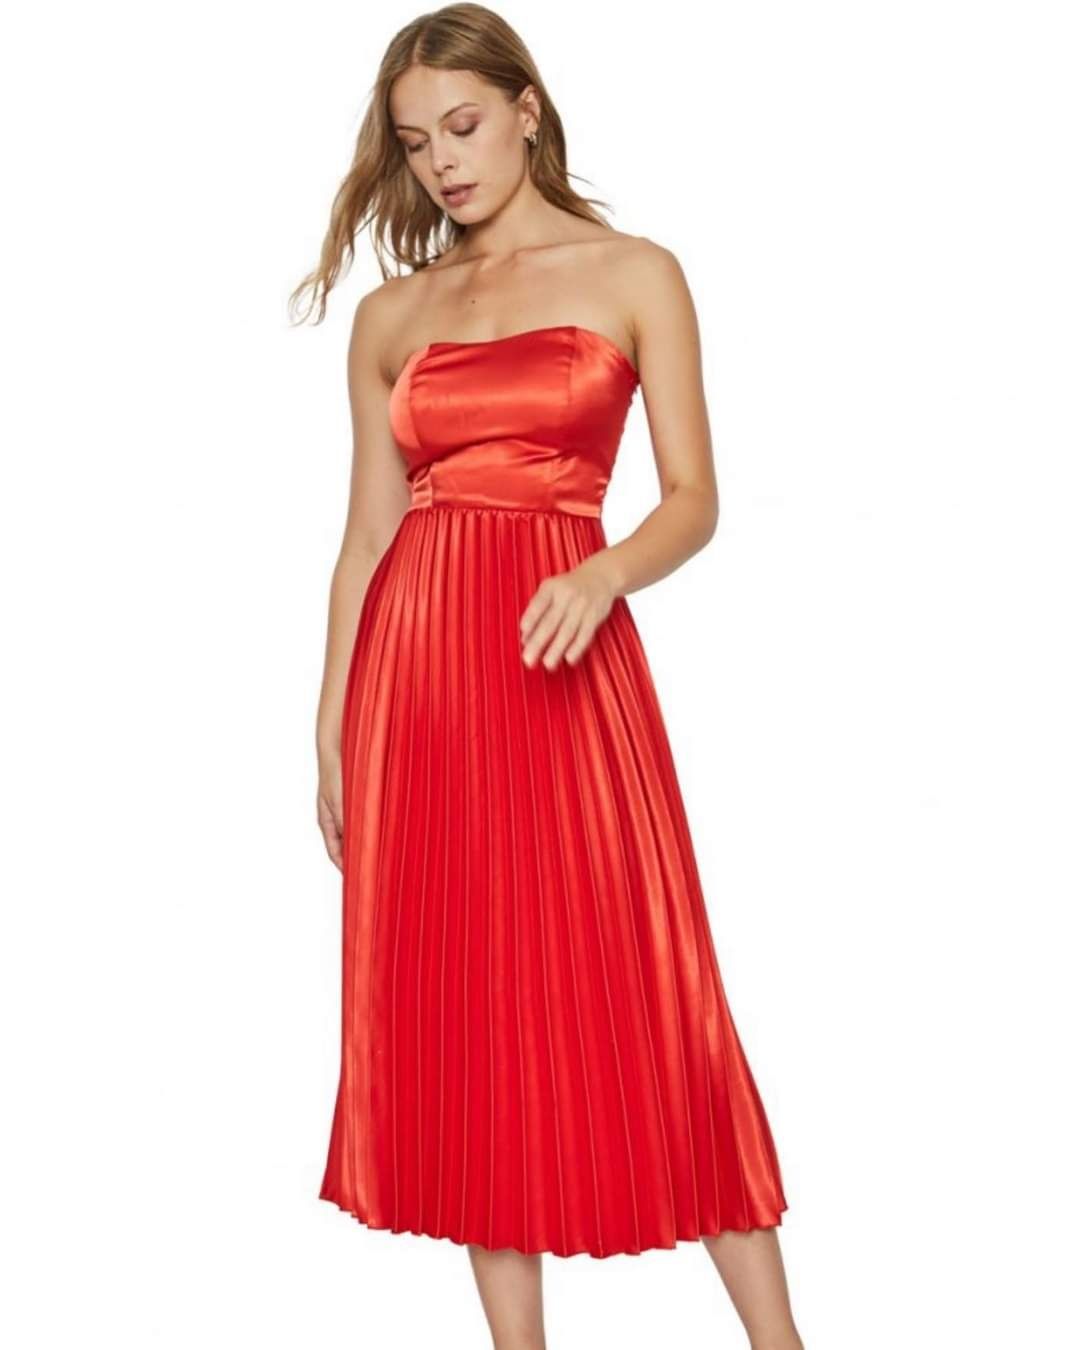 Дамска червена рокля М размер